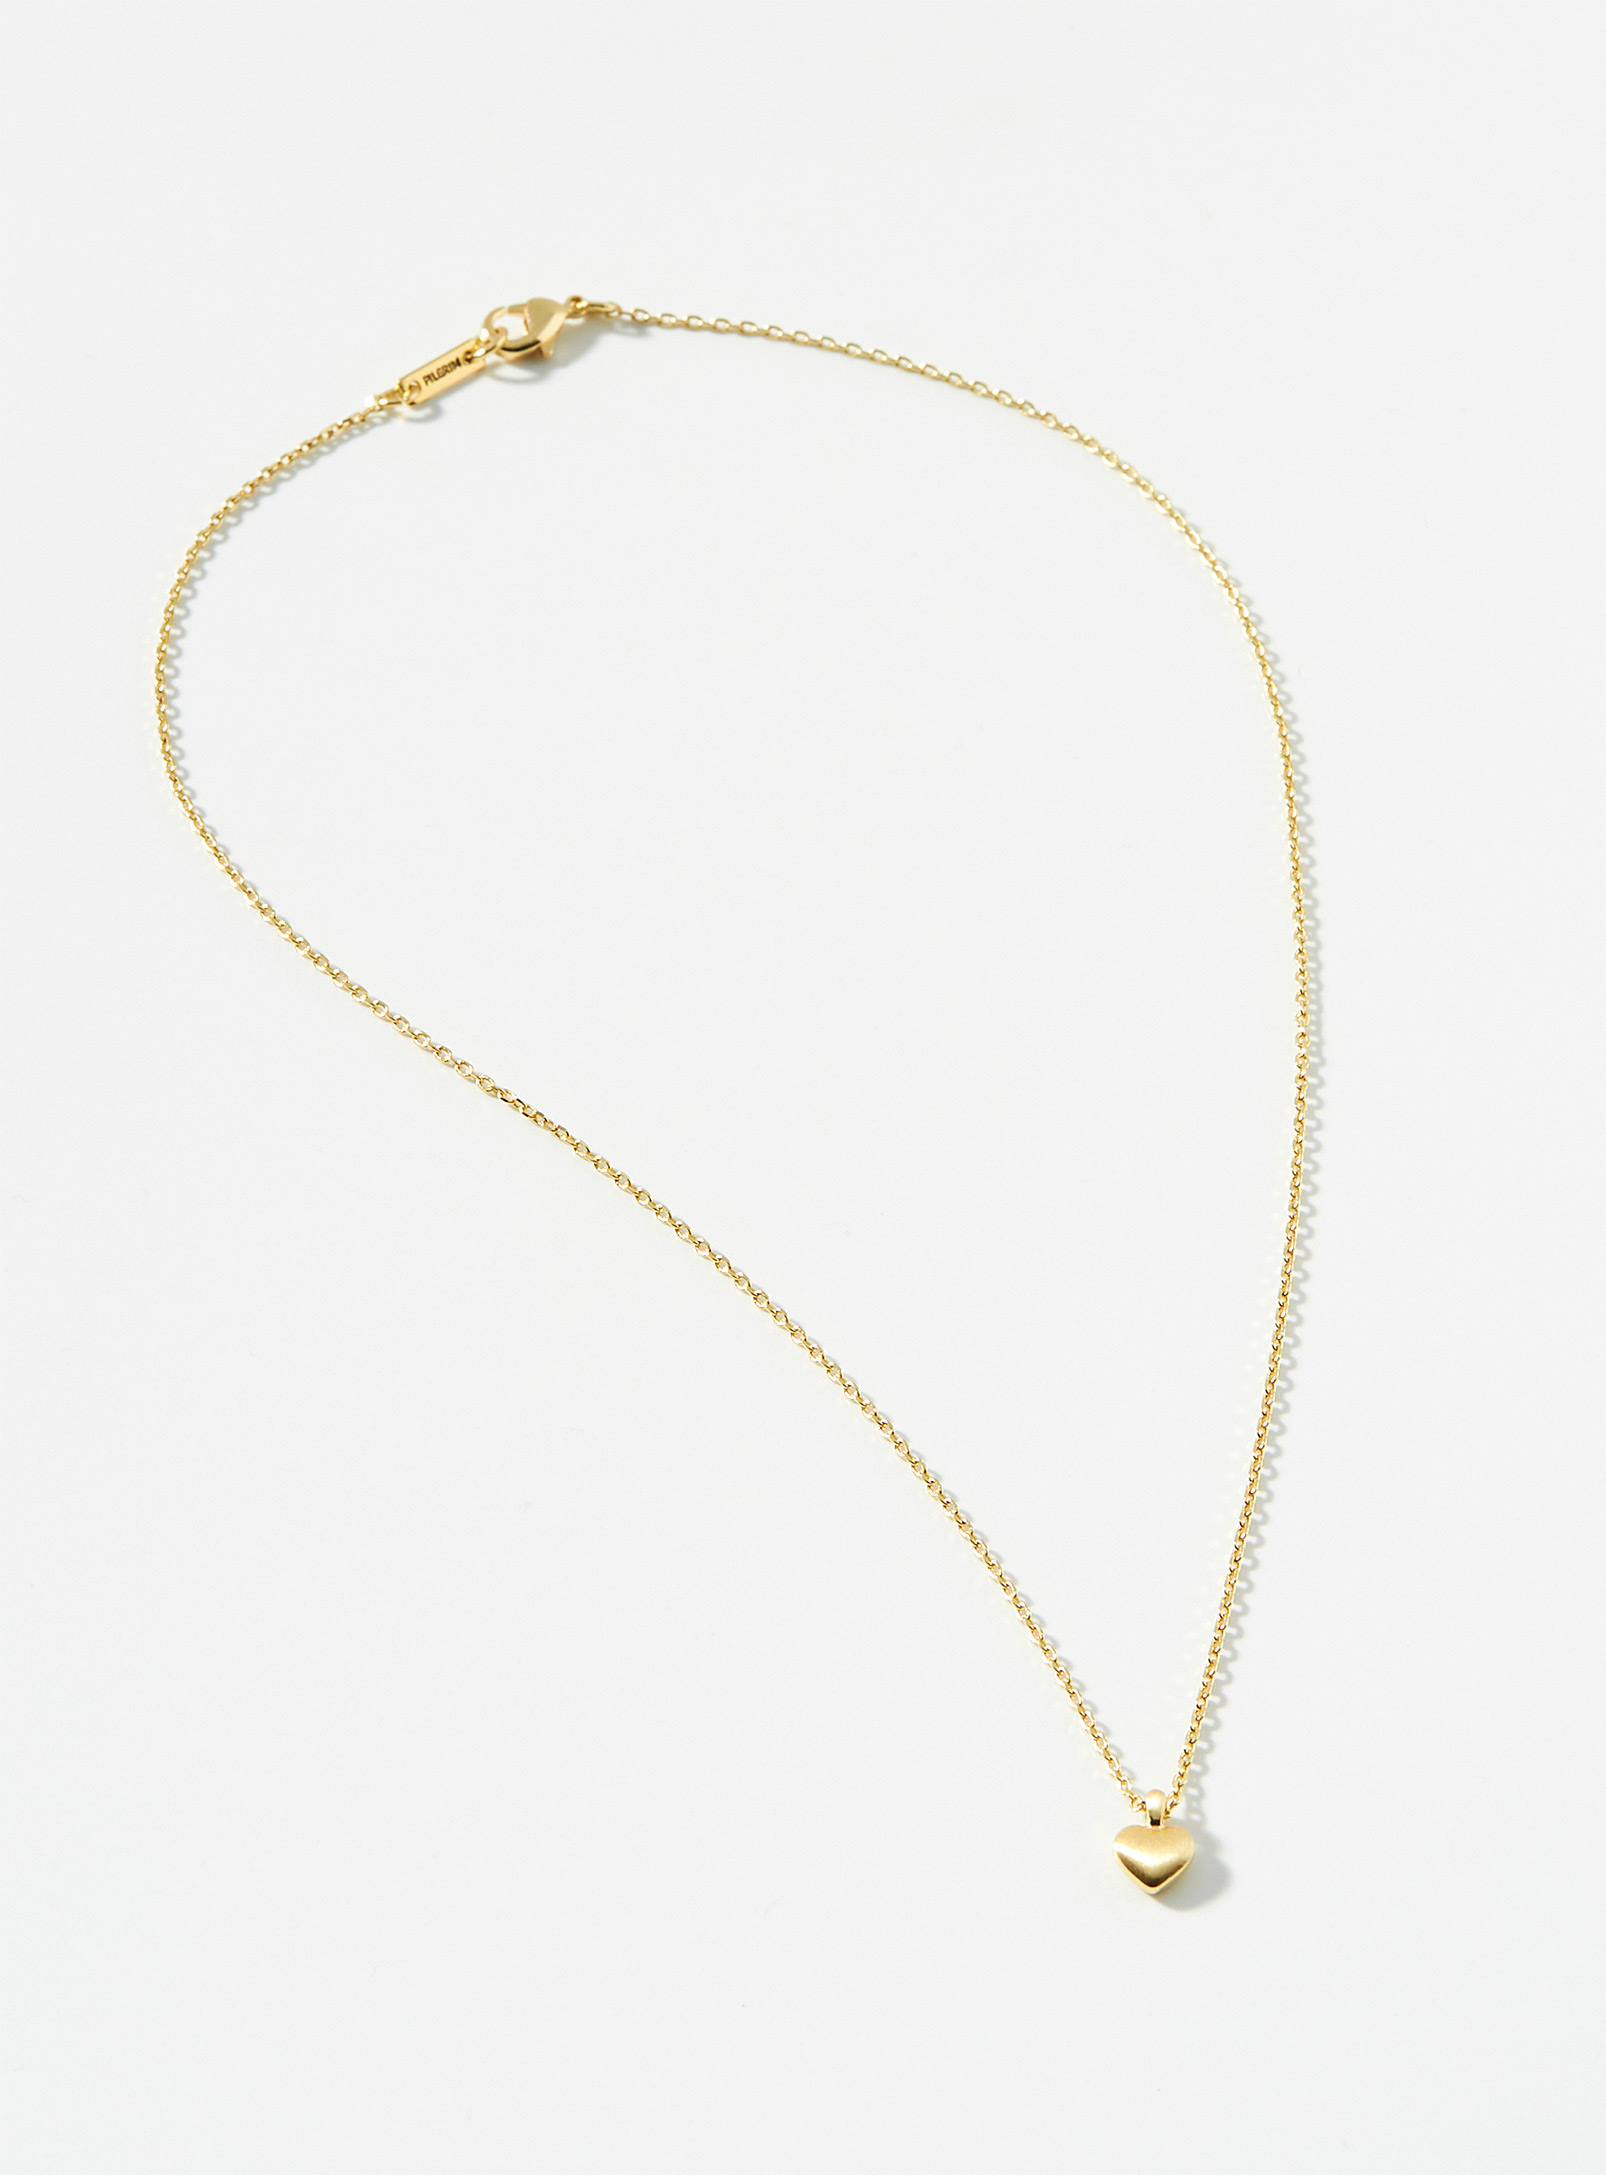 Pilgrim - Women's Small gold heart chain